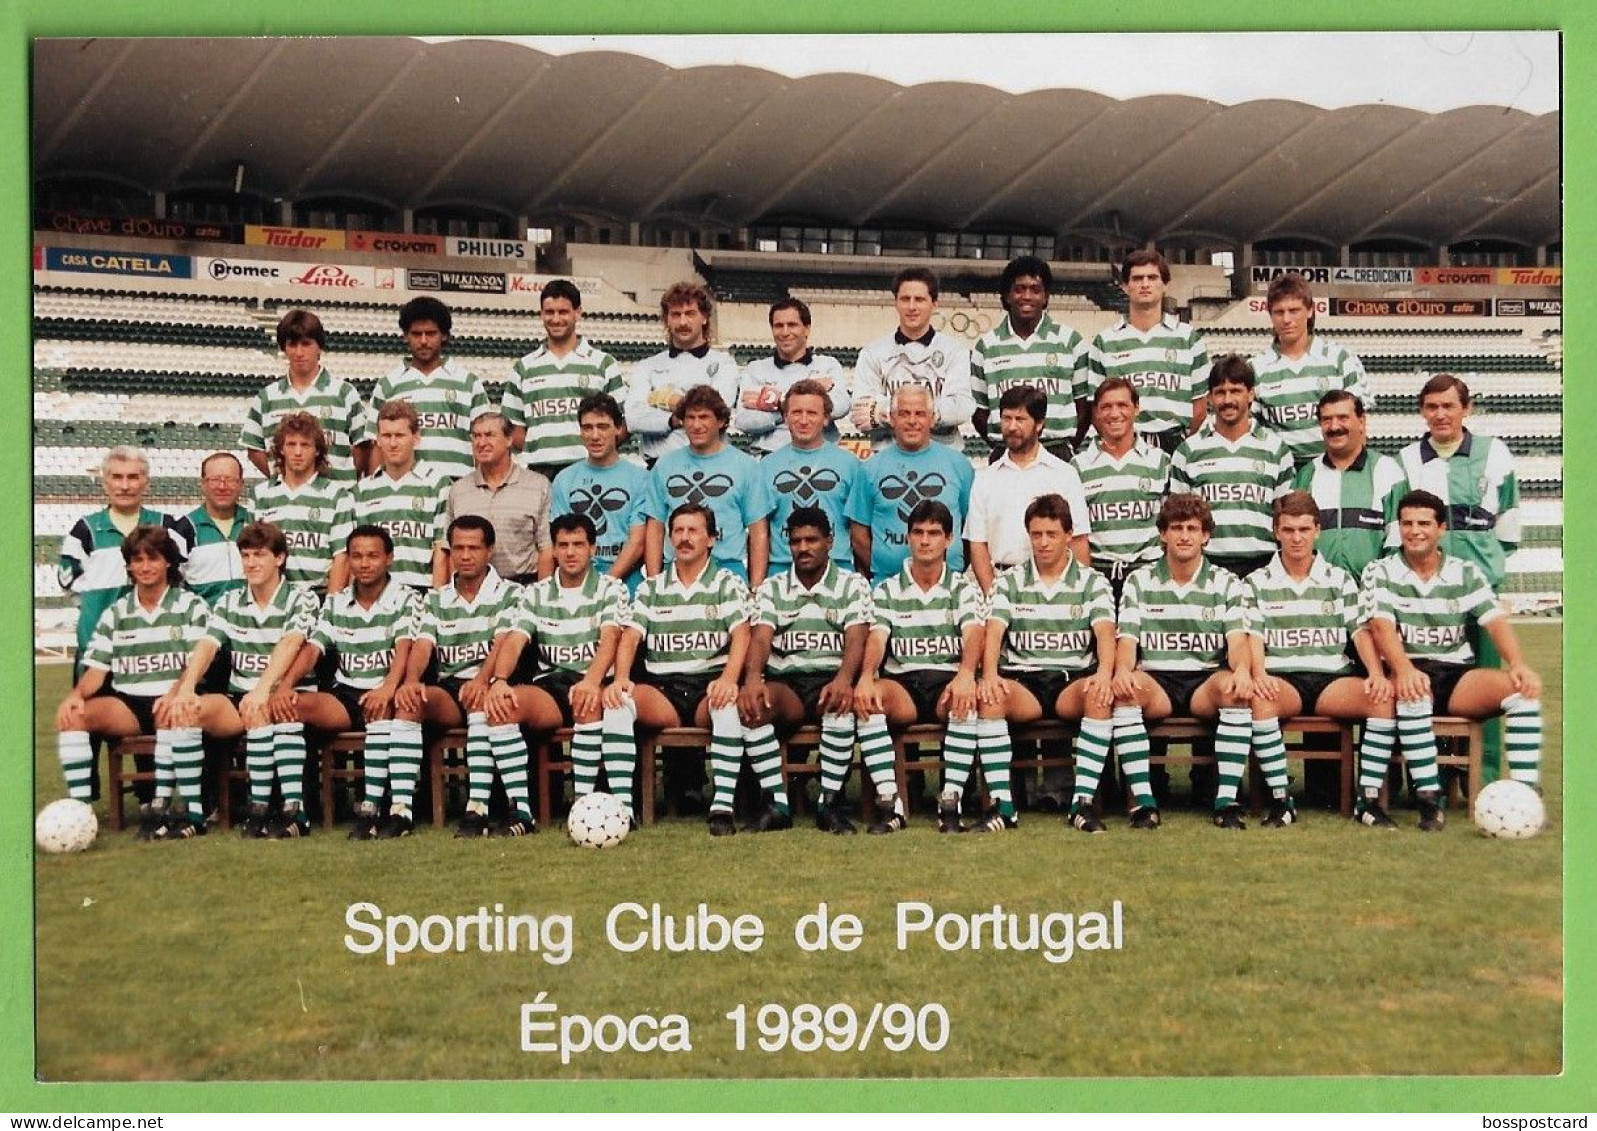 Lisboa - REAL PHOTO - Equipa De Futebol Do Sporting Clube De Portugal - Estádio - Football - Stadium - Portugal - Voetbal